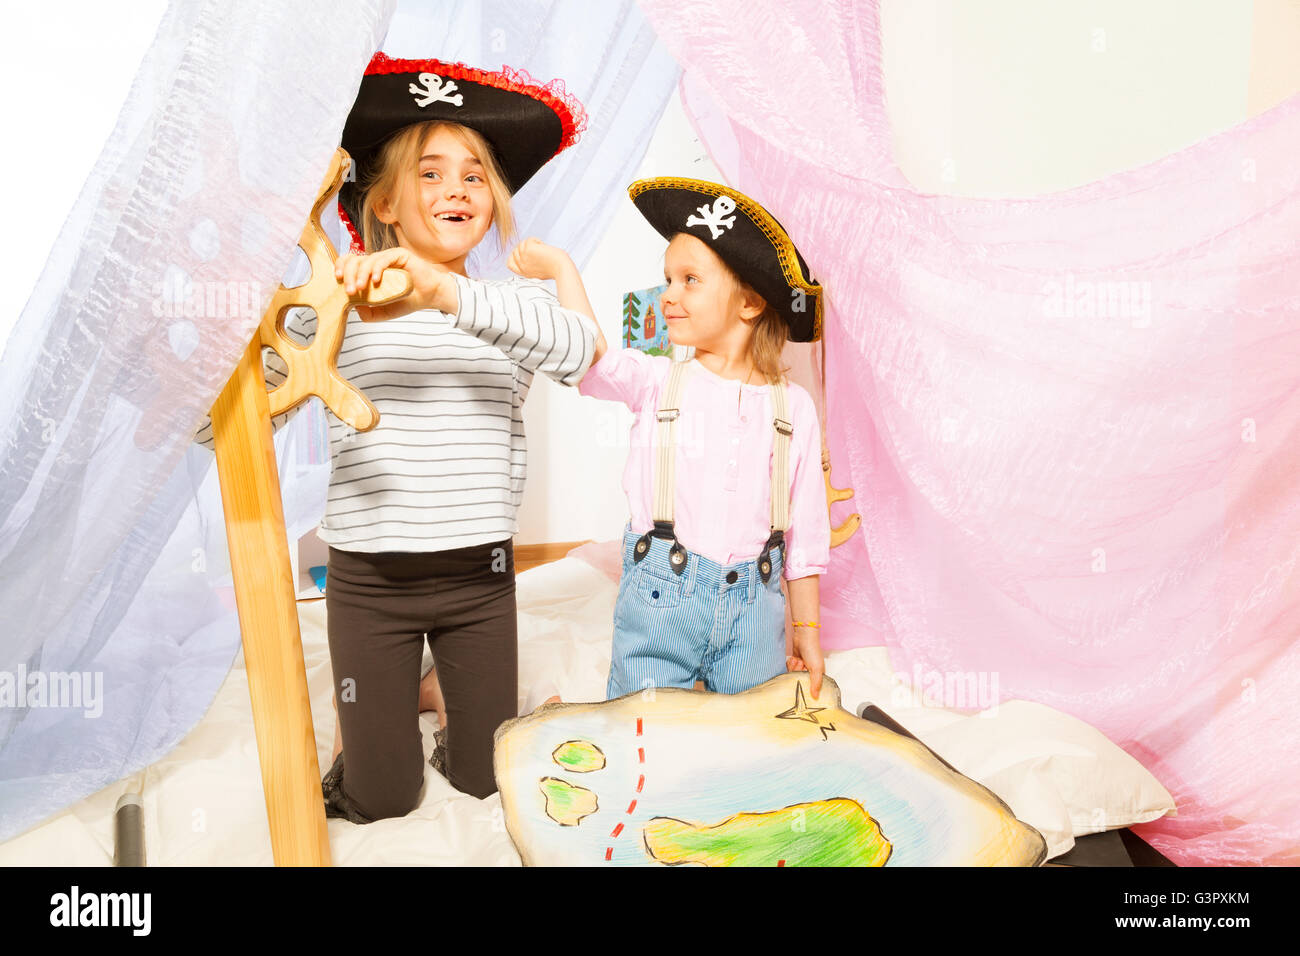 Funny Girls en costumes de pirate la gouverne du navire Banque D'Images